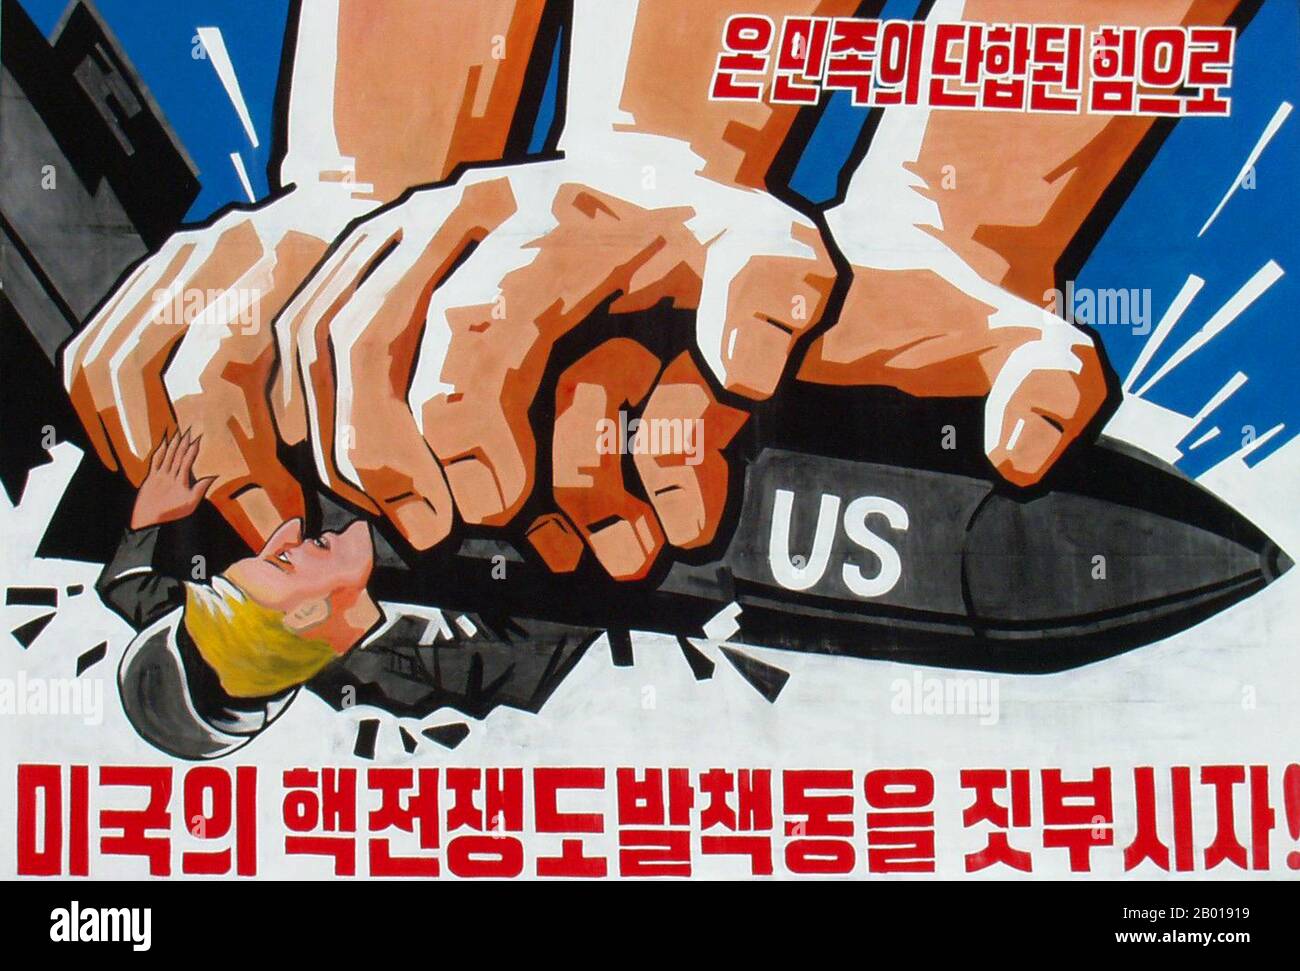 Korea: Nordkoreanisches (DVRK) Propagandaplakat zeigt mächtige Hände, die eine militaristische USA, c.. 1950s. Sozialistischer Realismus ist ein Stil realistischer Kunst, der sich unter dem Sozialismus in der Sowjetunion entwickelte und in anderen kommunistischen Ländern zu einem dominanten Stil wurde. Der sozialistische Realismus ist ein teleologisch orientierter Stil, der die Förderung der Ziele des Sozialismus und Kommunismus zum Ziel hat. Obwohl verwandt, sollte sie nicht mit dem sozialen Realismus verwechselt werden, einer Art Kunst, die Themen sozialer Belang realistisch darstellt. Stockfoto